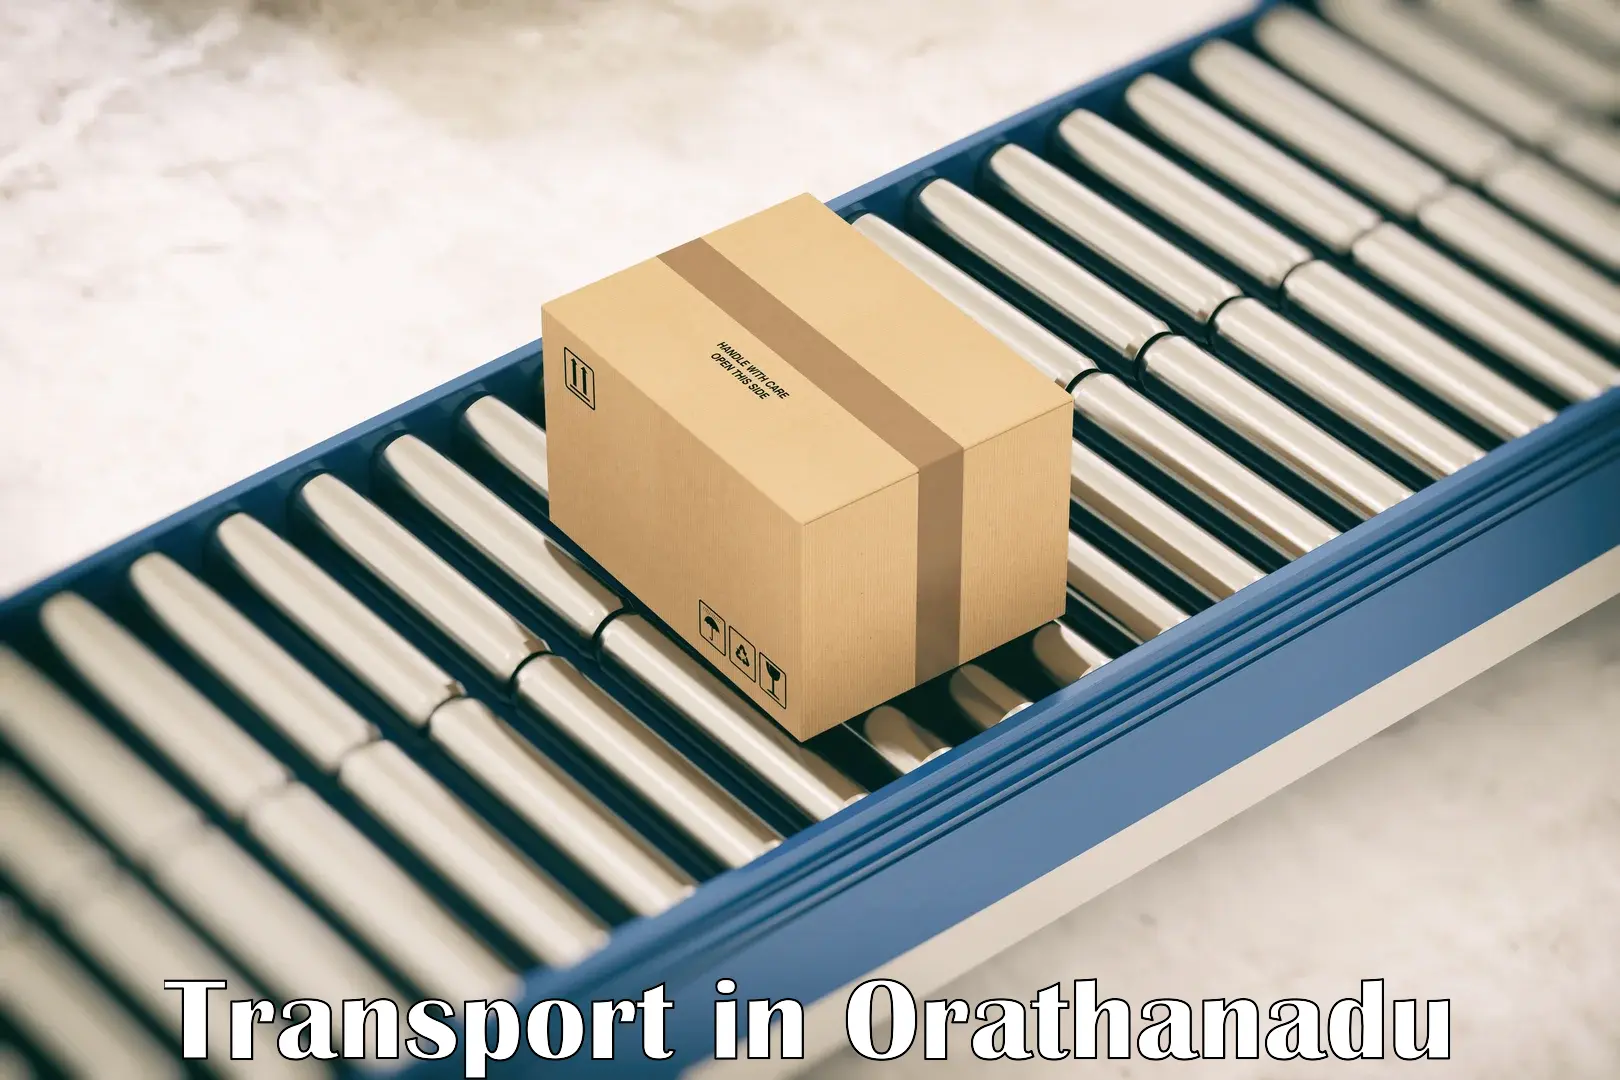 Interstate goods transport in Orathanadu